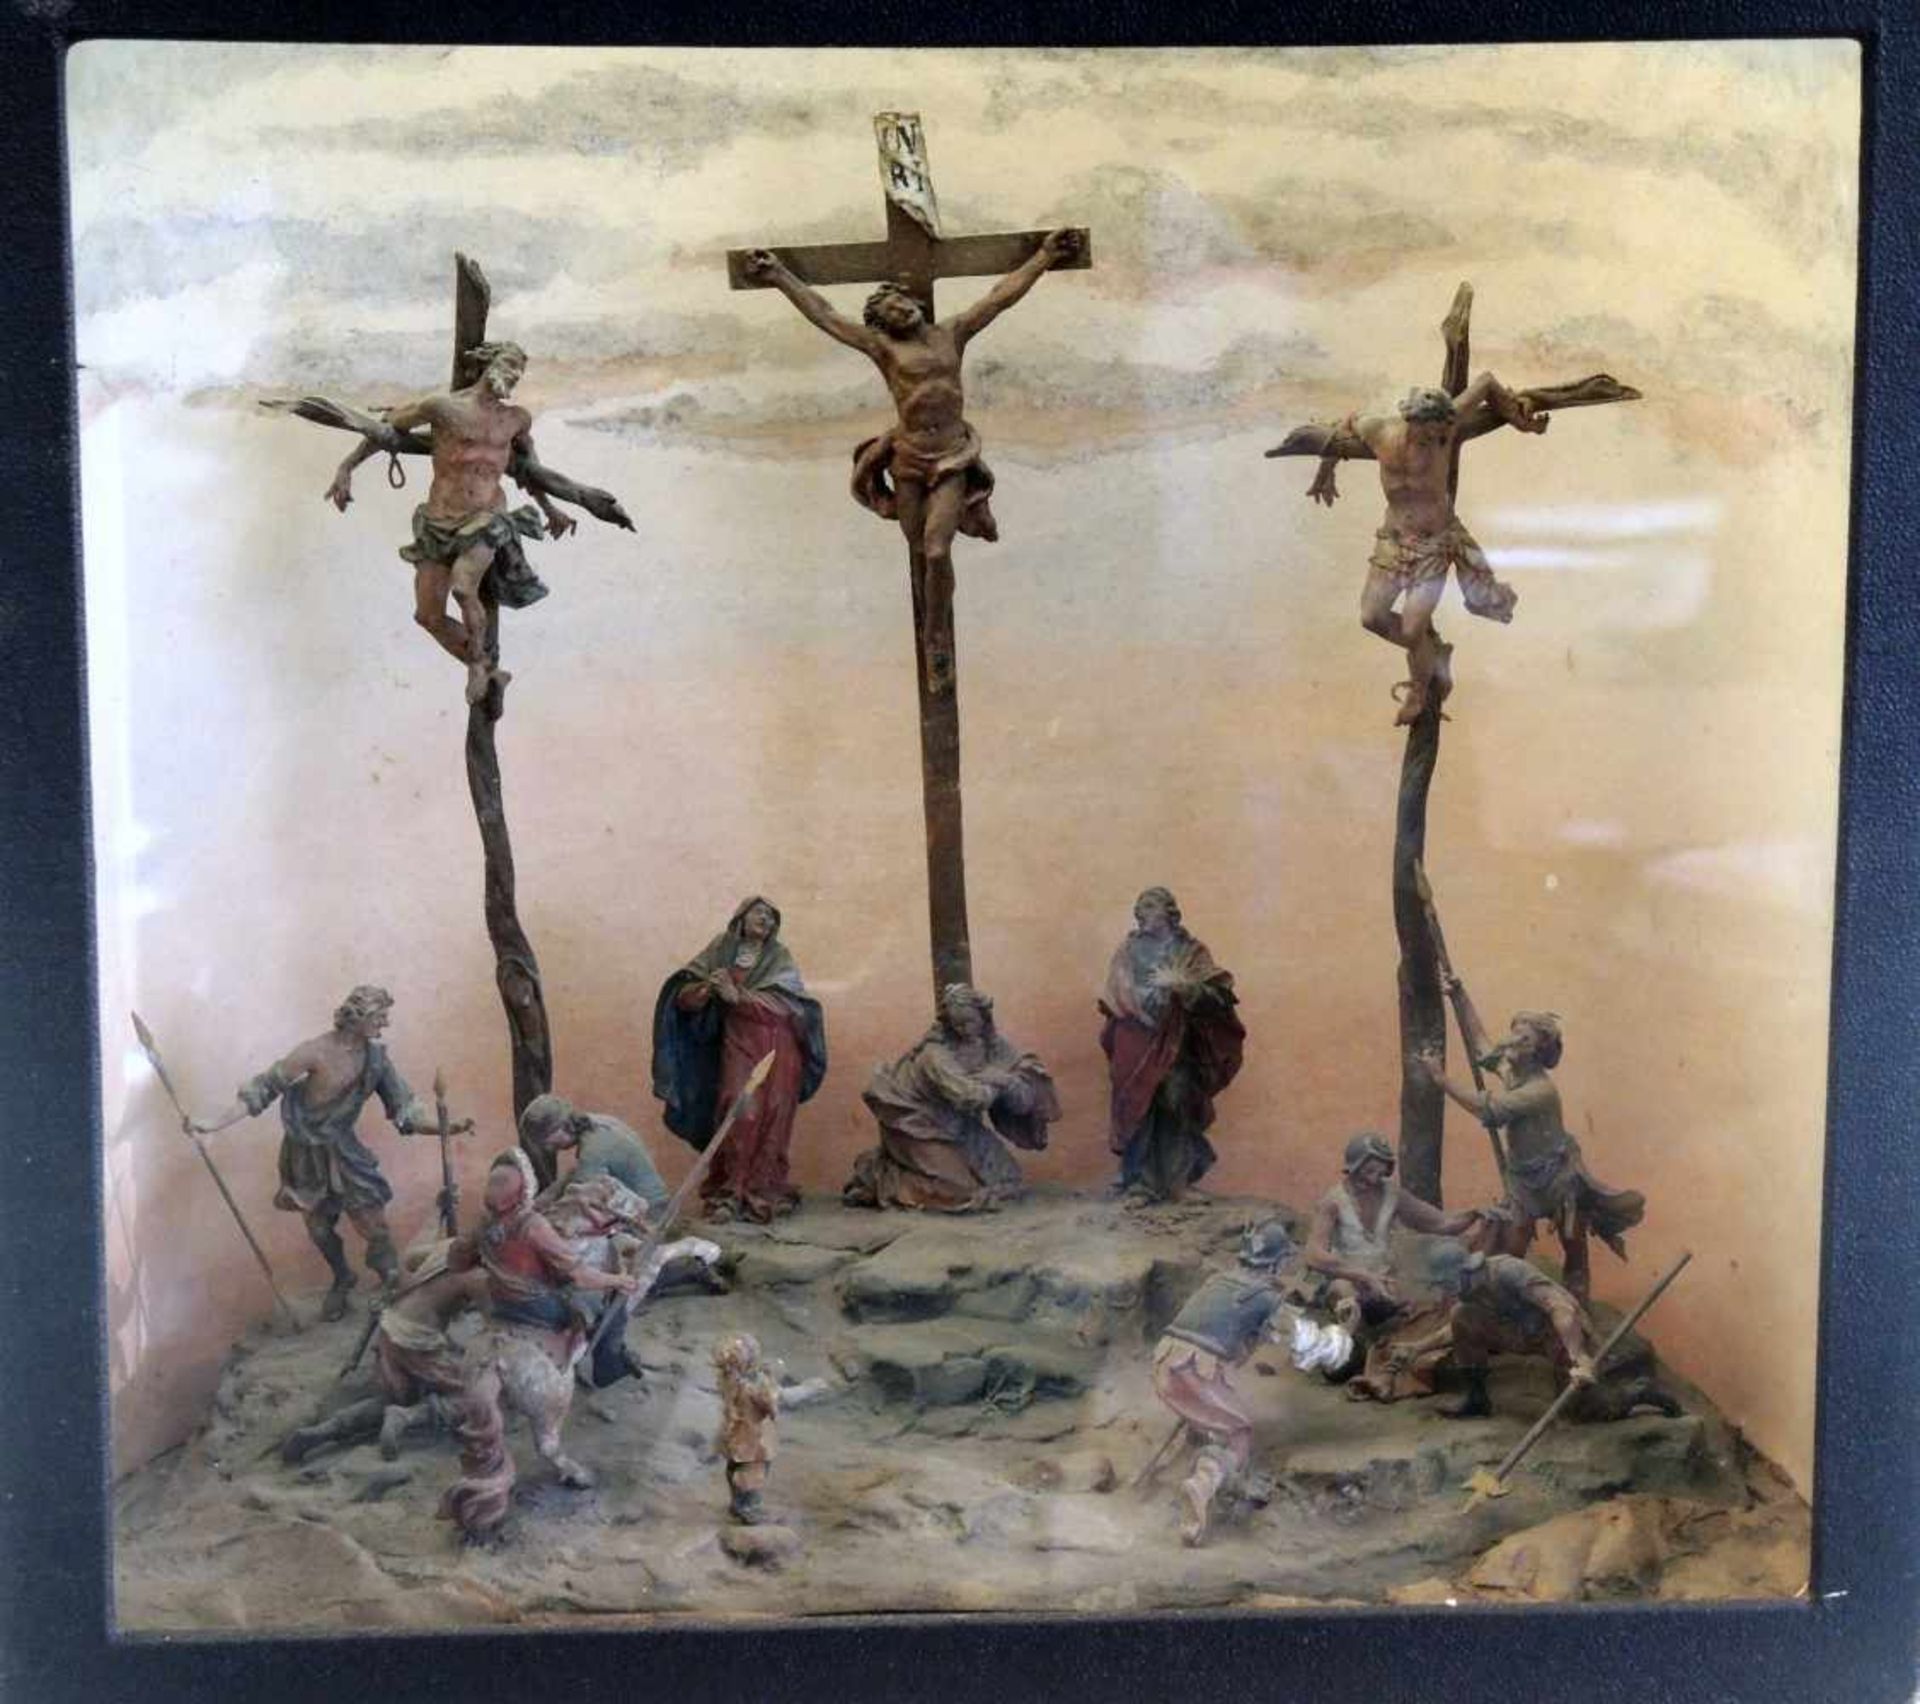 Schaukasten - Biblische DarstellungVerglaster Schaukasten mit Darstellung der Kreuzigung Christi. - Image 3 of 3